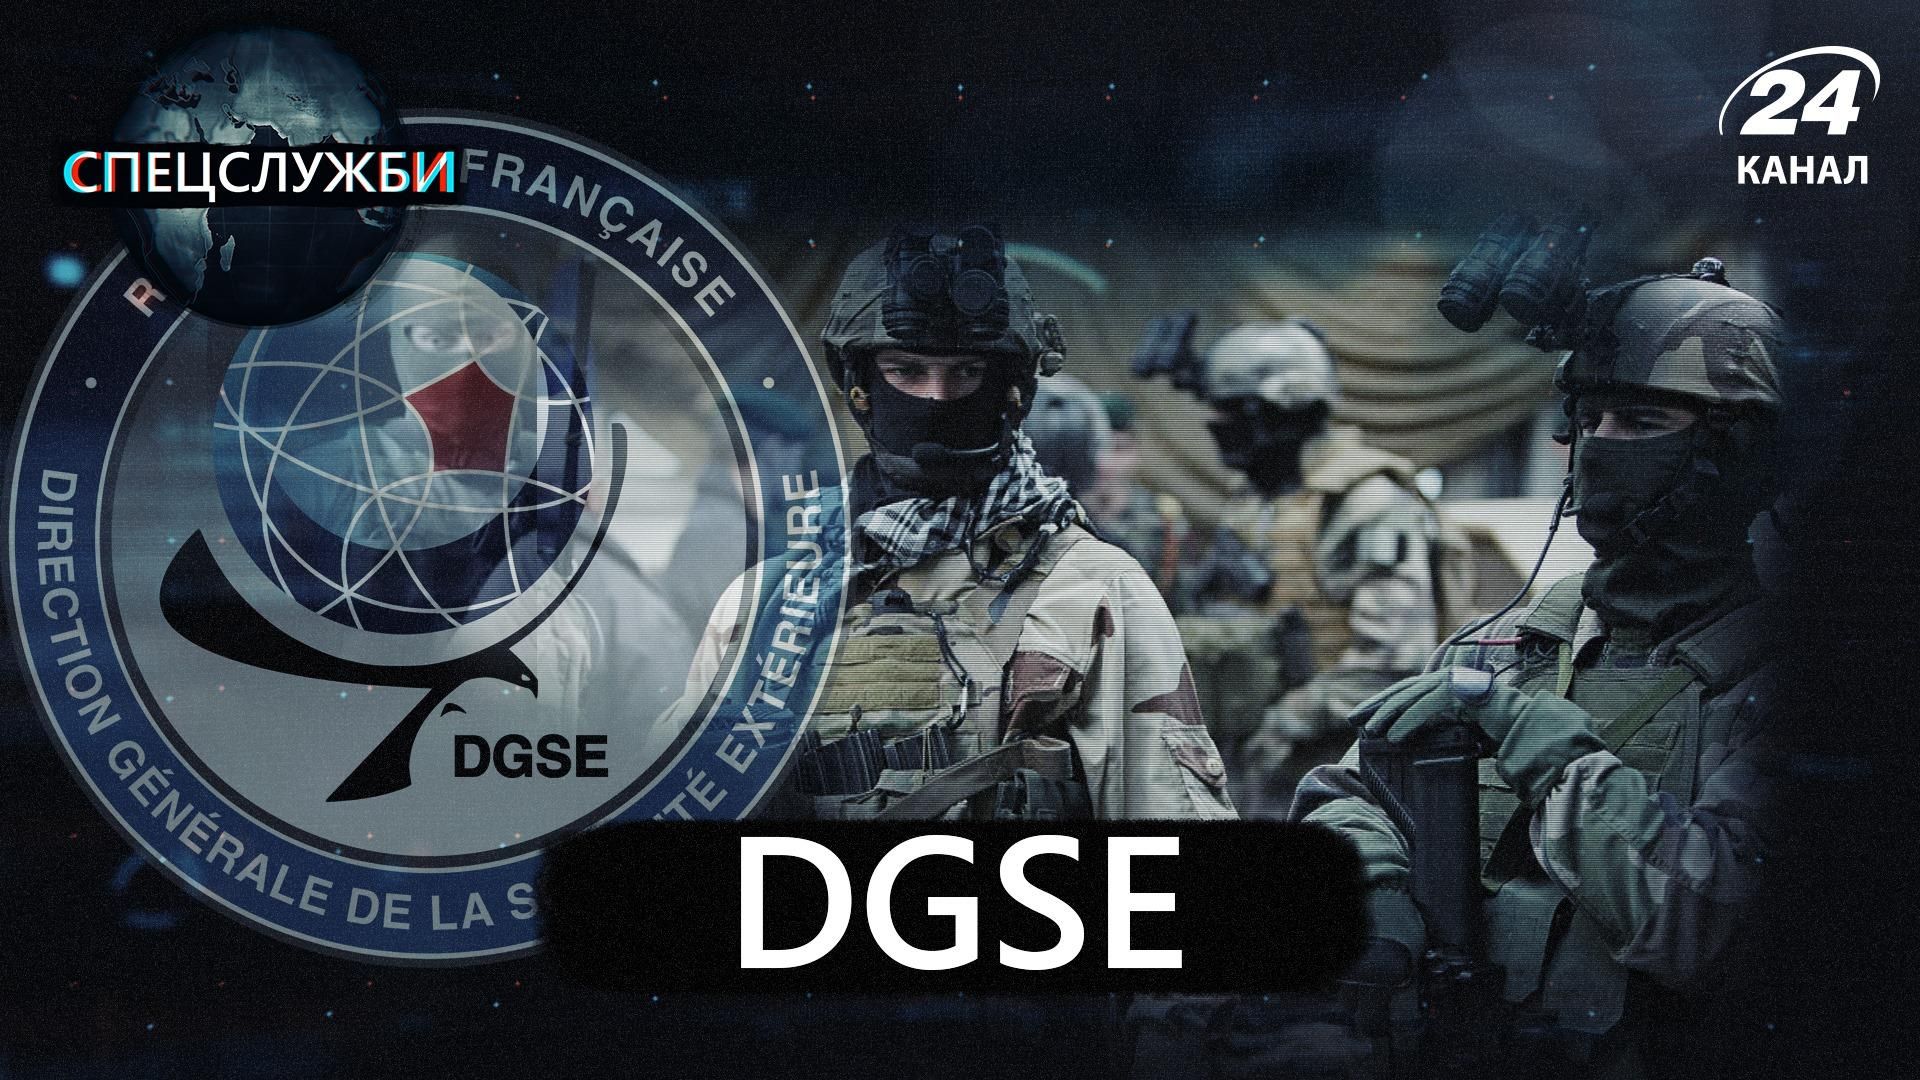 Спецслужба, яка вплинула на хід світової історії: що відомо  про французьку агентуру DGSE